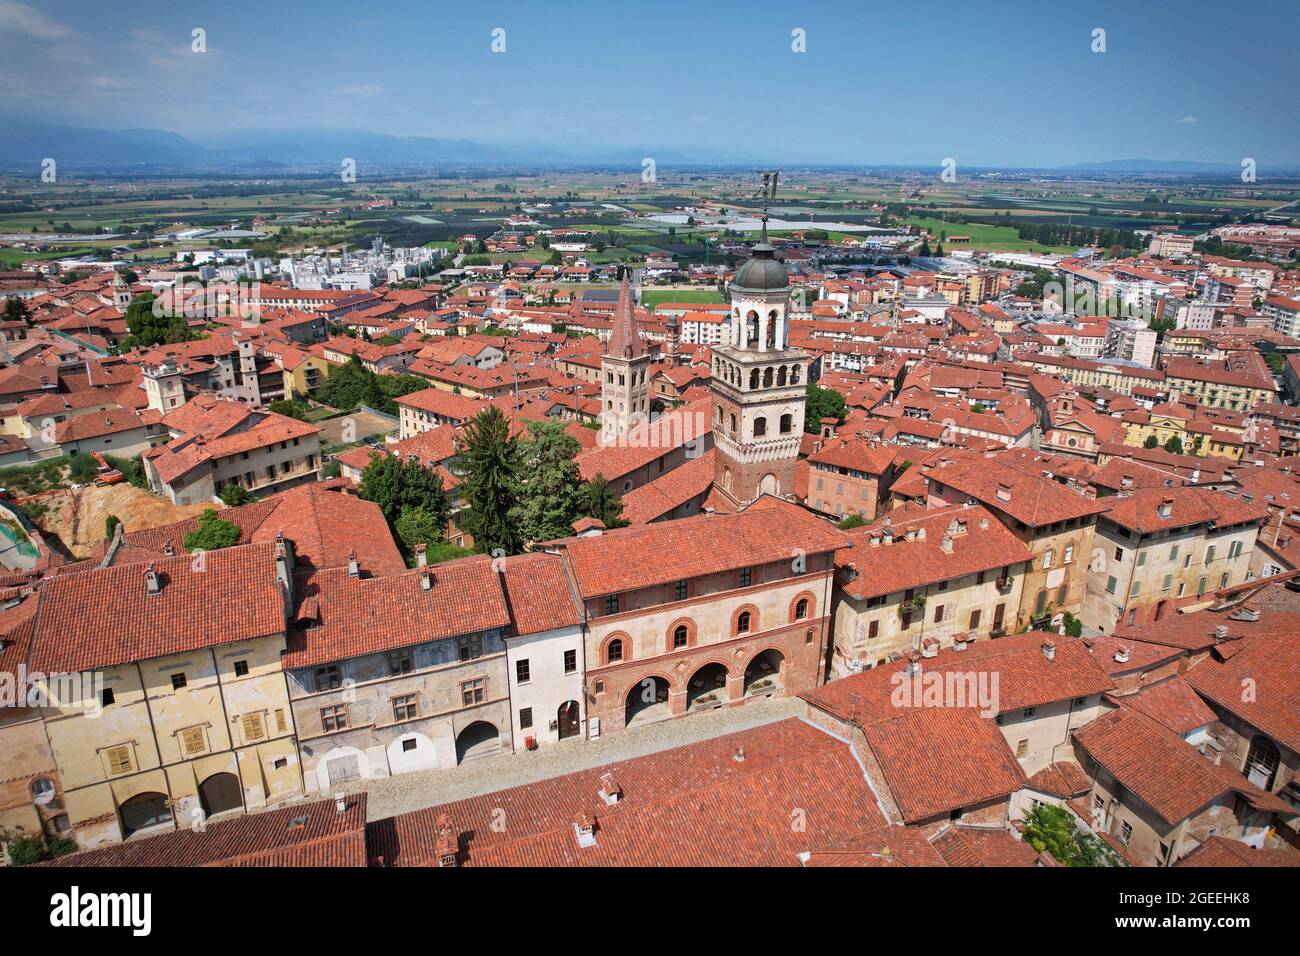 Vue aérienne de la ville de Saluzzo, l'un des villages médiévaux les mieux préservés du Piémont, en Italie Banque D'Images